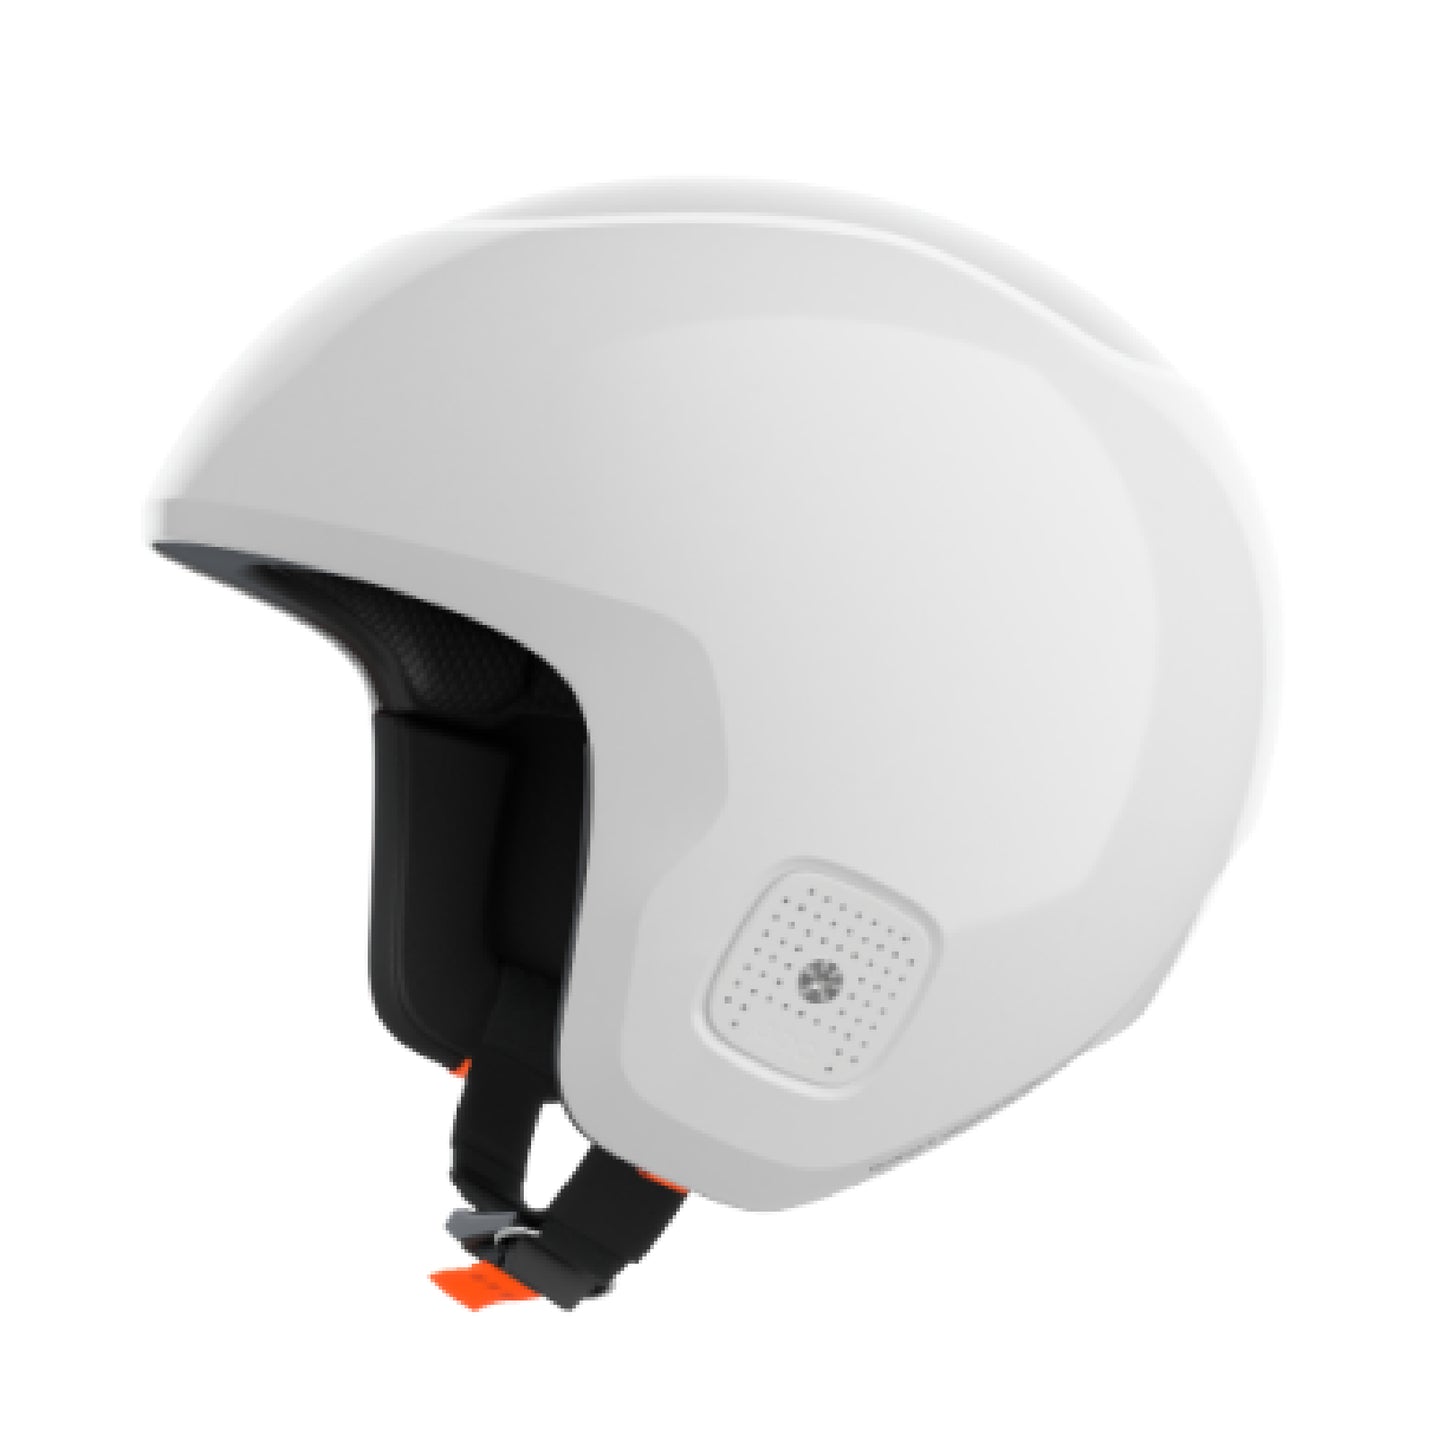 POC Skull Dura X MIPS Helmet 2025